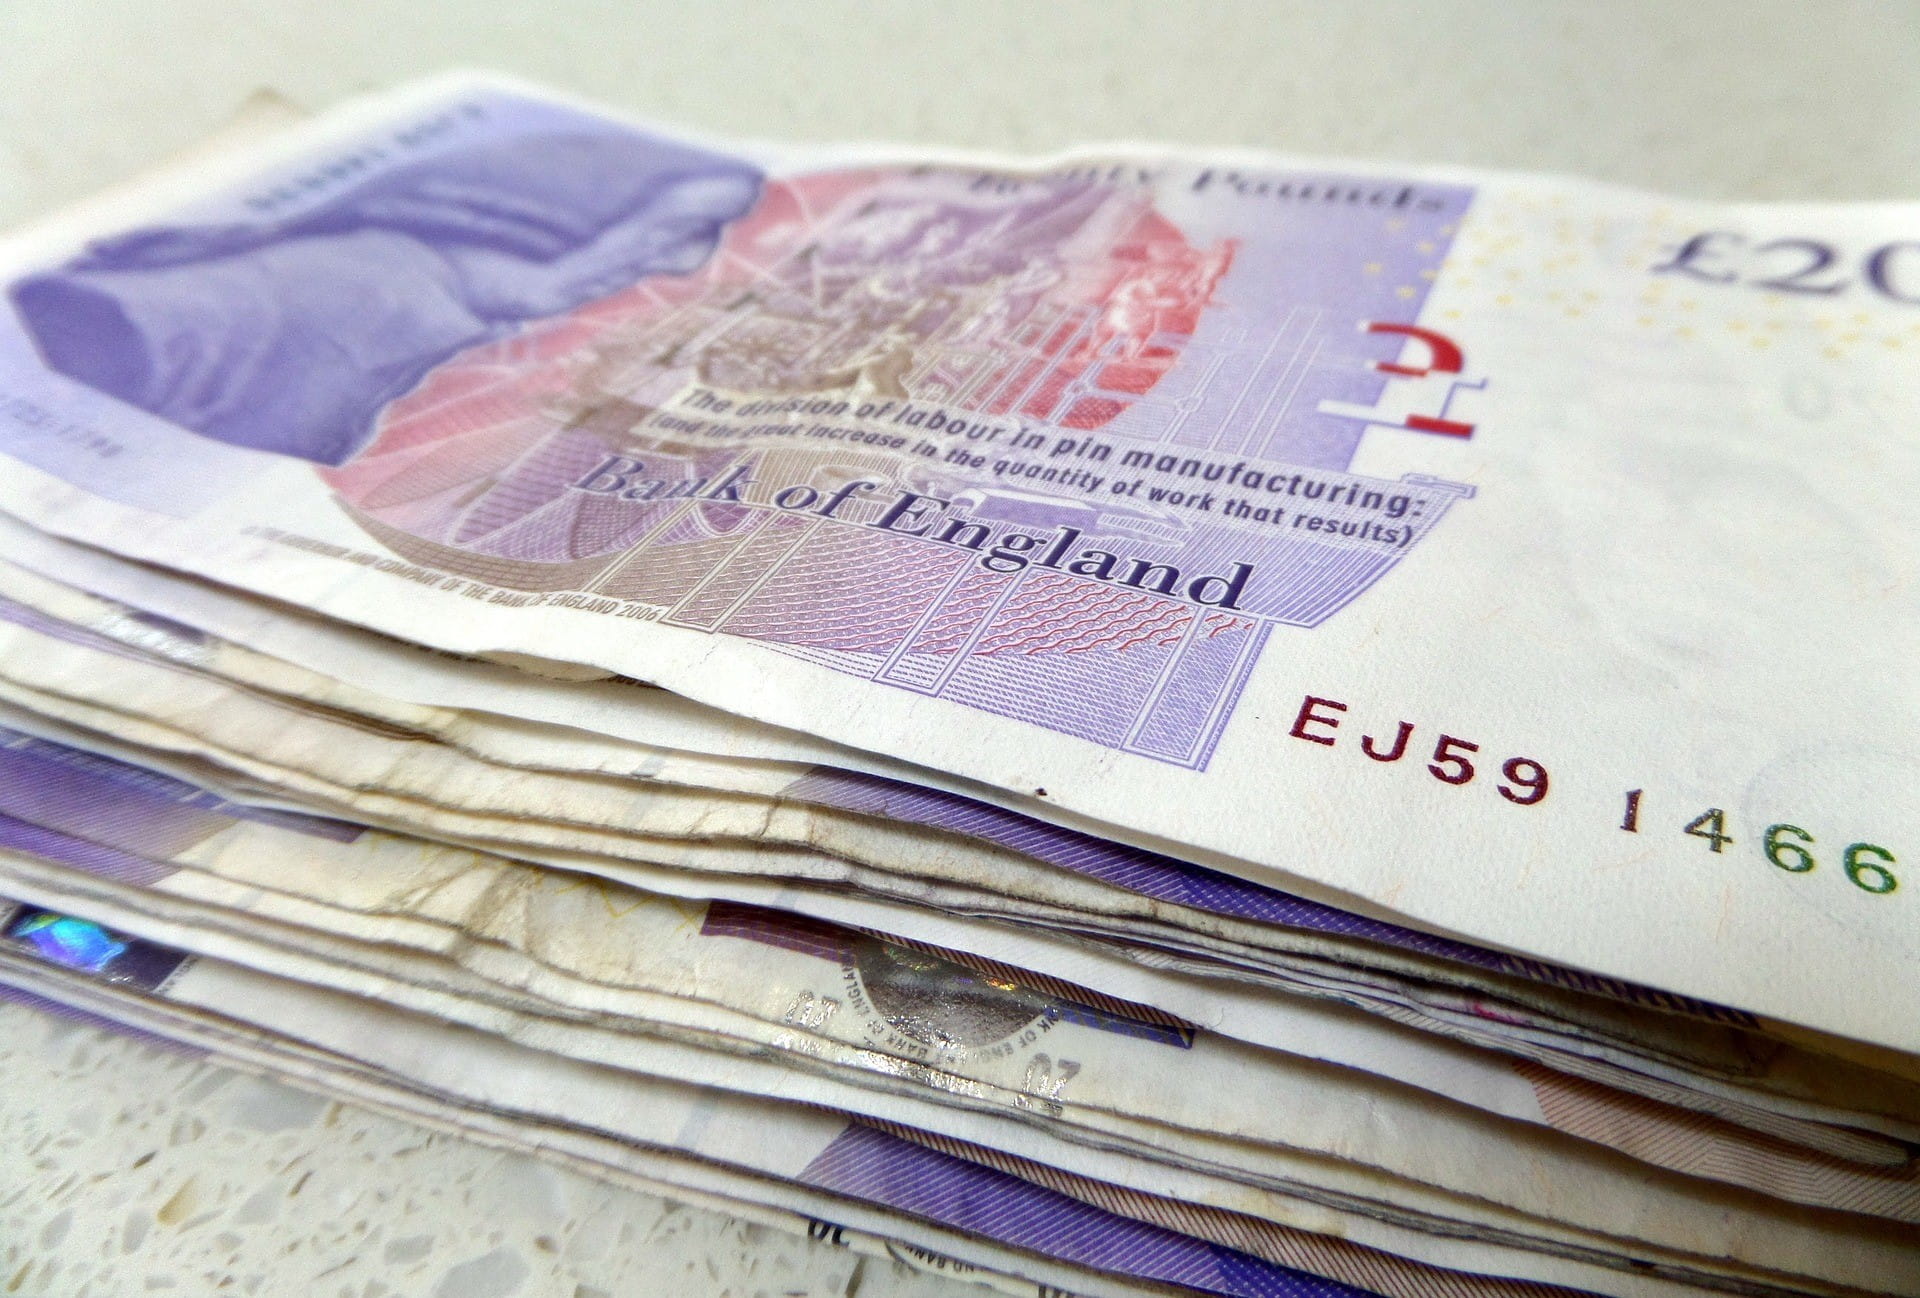 Beberapa uang kertas Inggris ditumpuk satu sama lain.